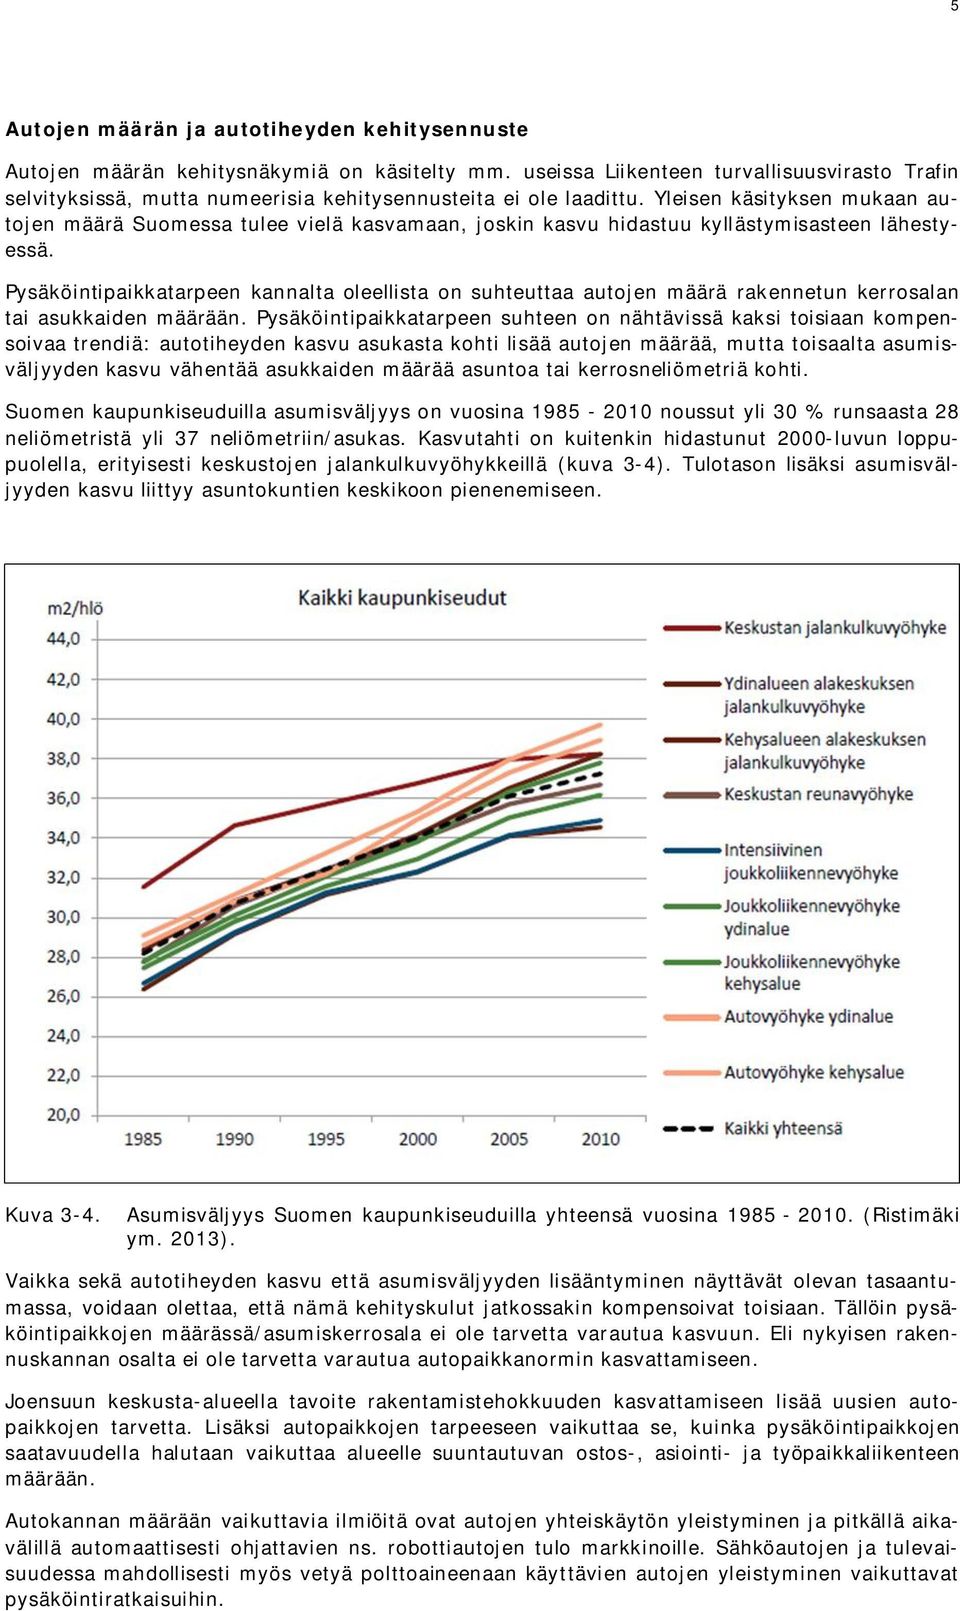 Yleisen käsityksen mukaan autojen määrä Suomessa tulee vielä kasvamaan, joskin kasvu hidastuu kyllästymisasteen lähestyessä.